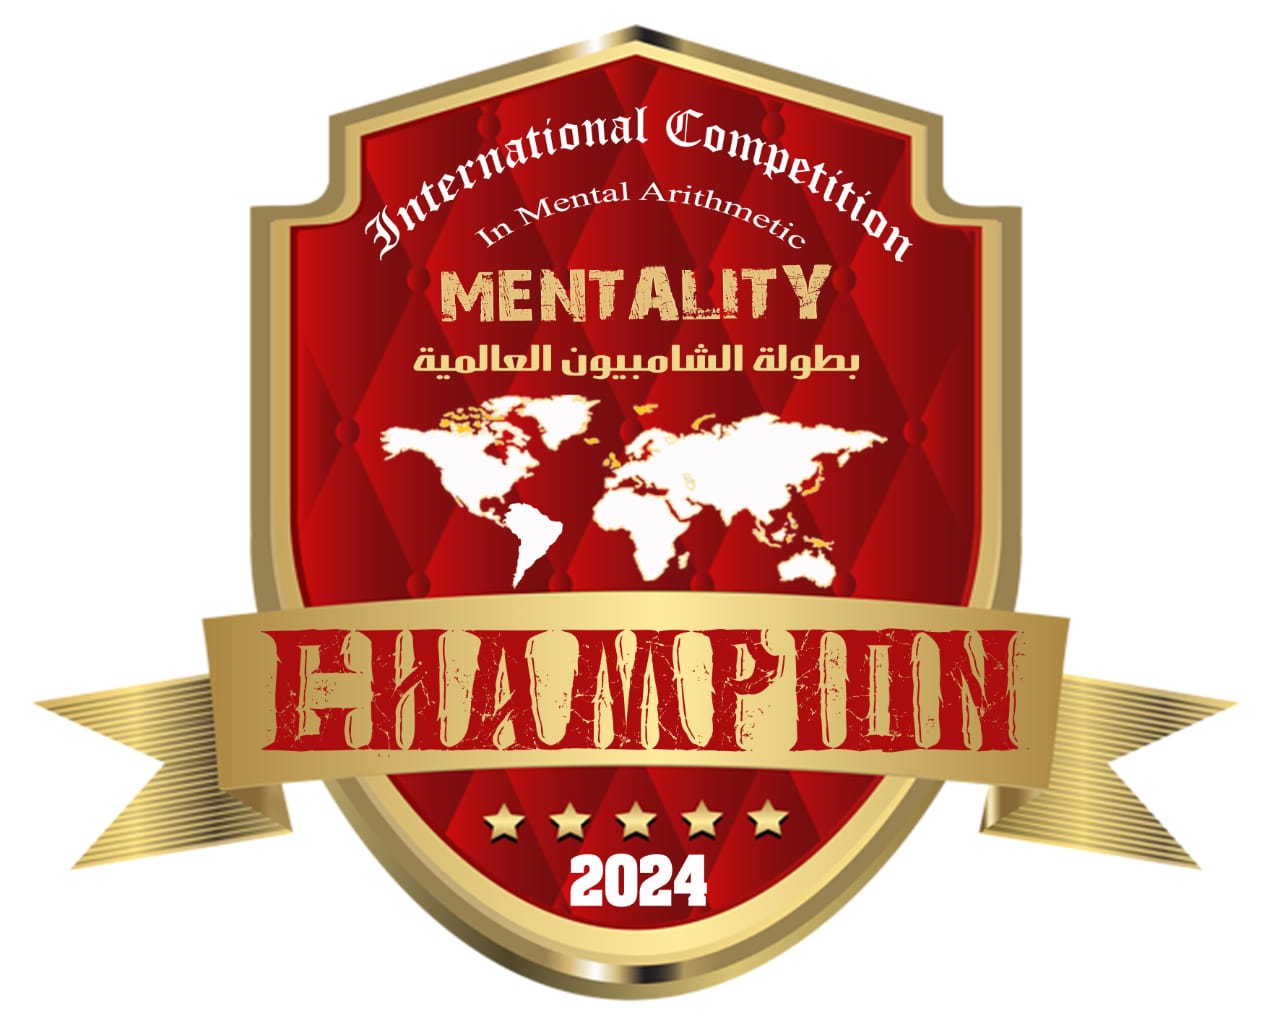 Champion 2024